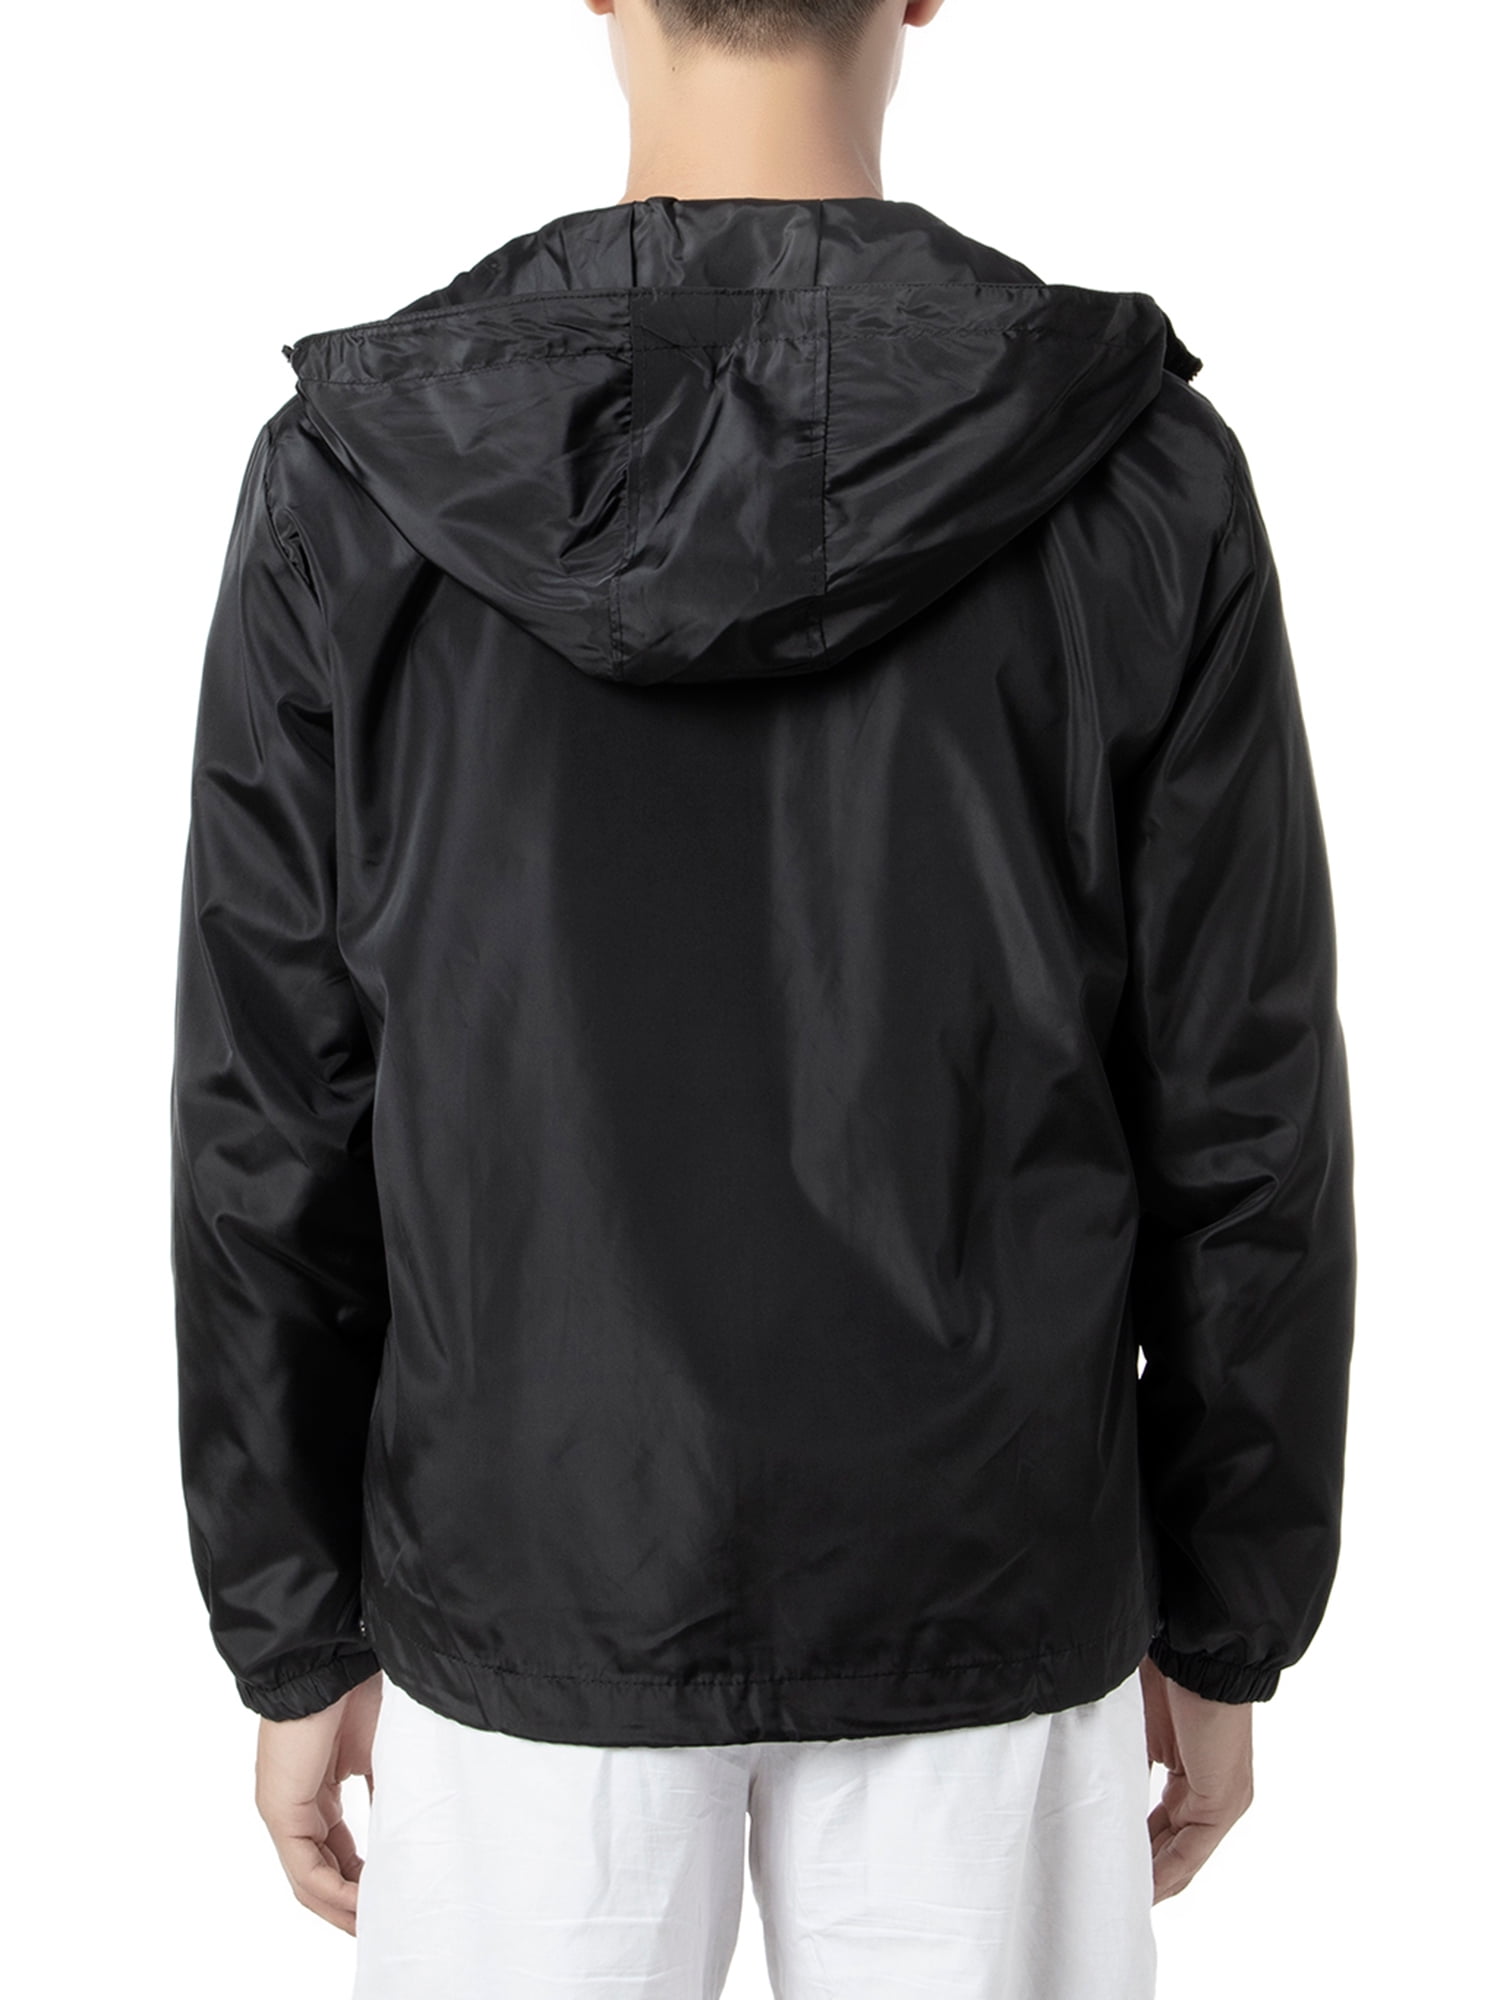 Details about   Mans Windbreaker Rainproof Hoodie Rain Sportswear Sports Shell Size M